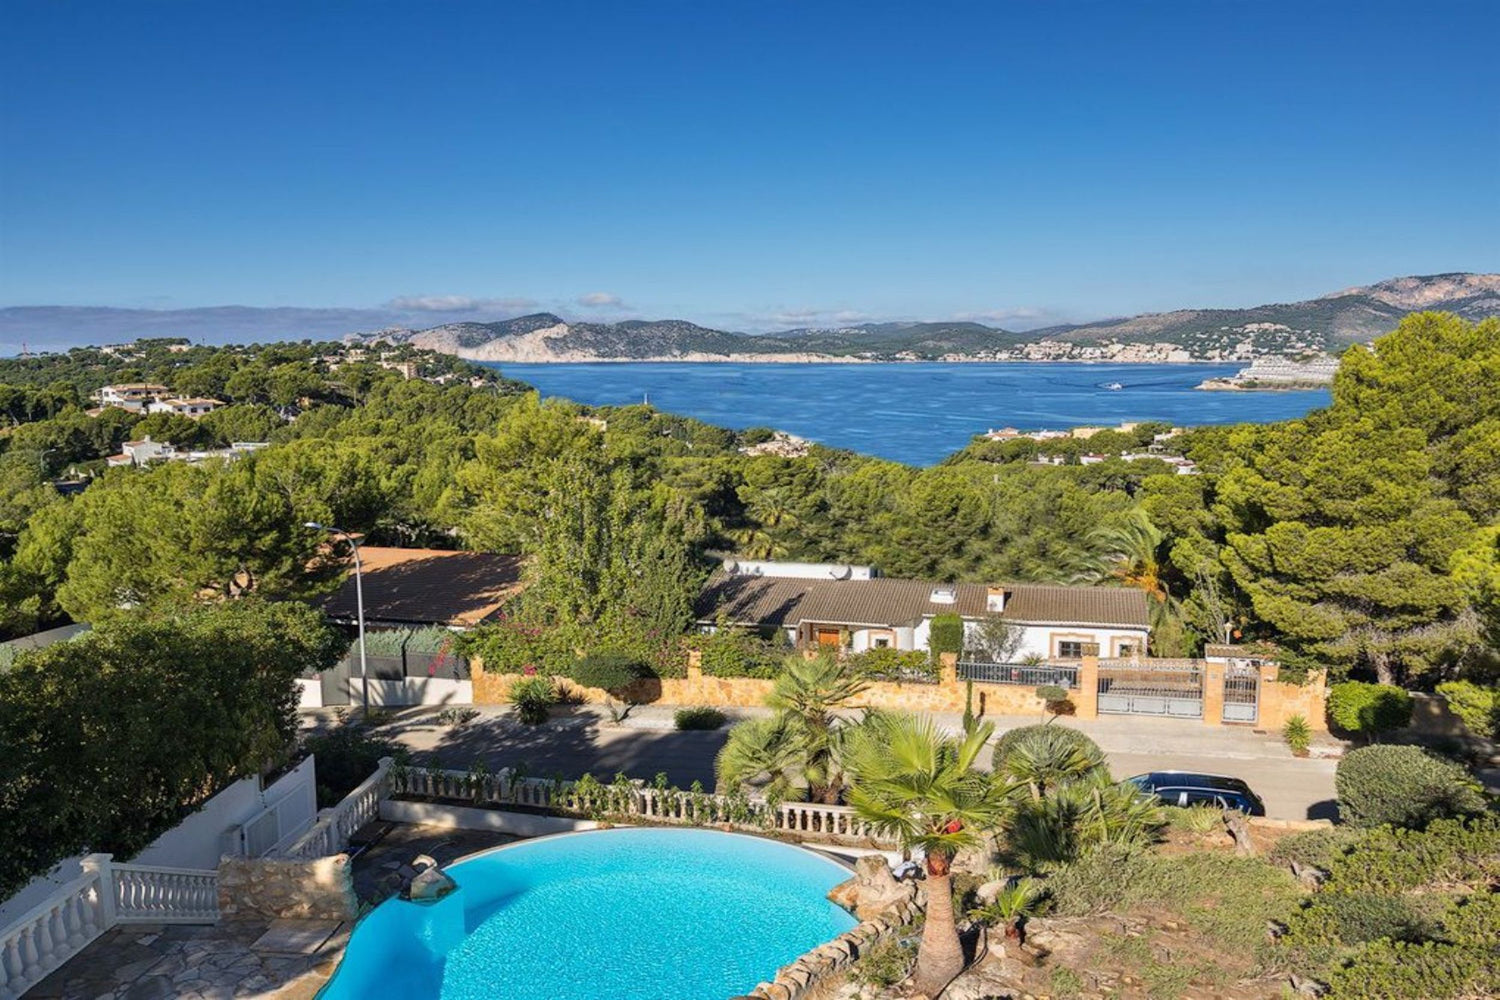 Four-bedroom property with sea views close to Santa Ponça beach